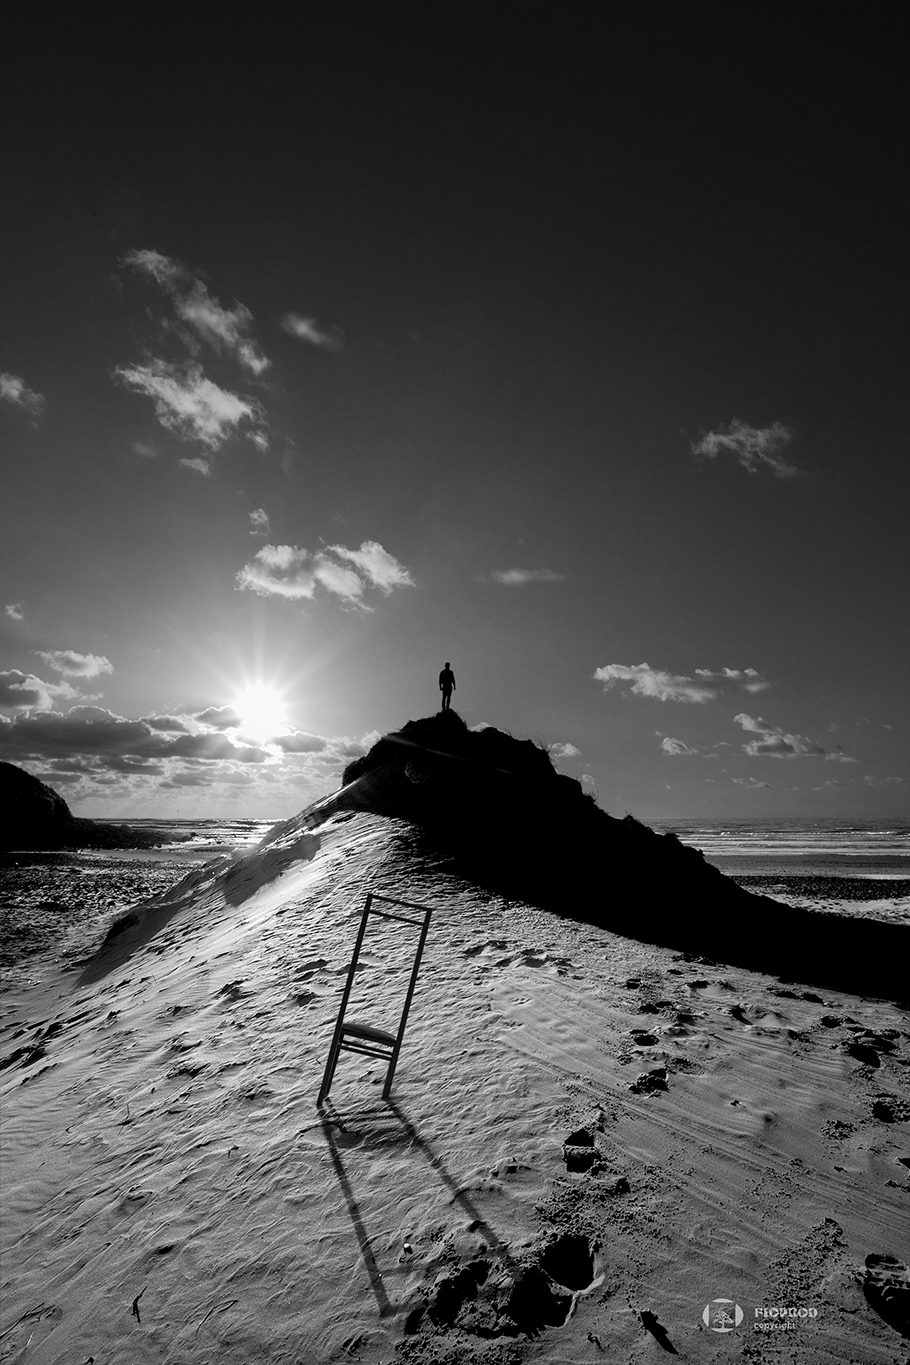 photo art dune de boulogne sur mer un homme au sommet du sable avec sa chaise imagine en regardant la mer florent studio